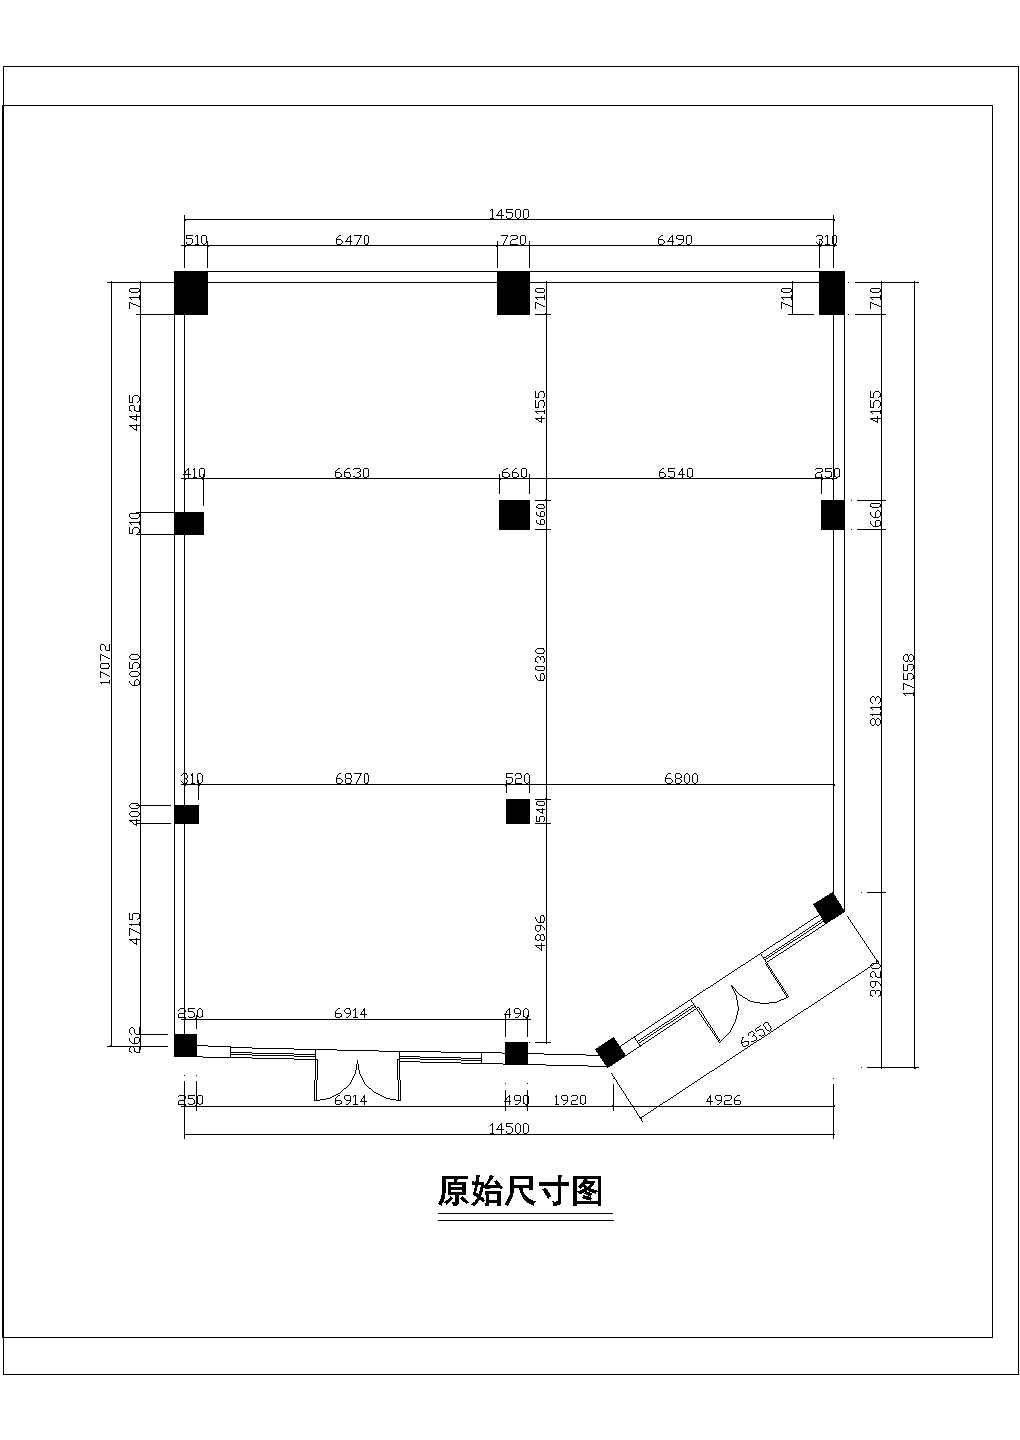 【江苏省】地板专卖店装修设计图纸